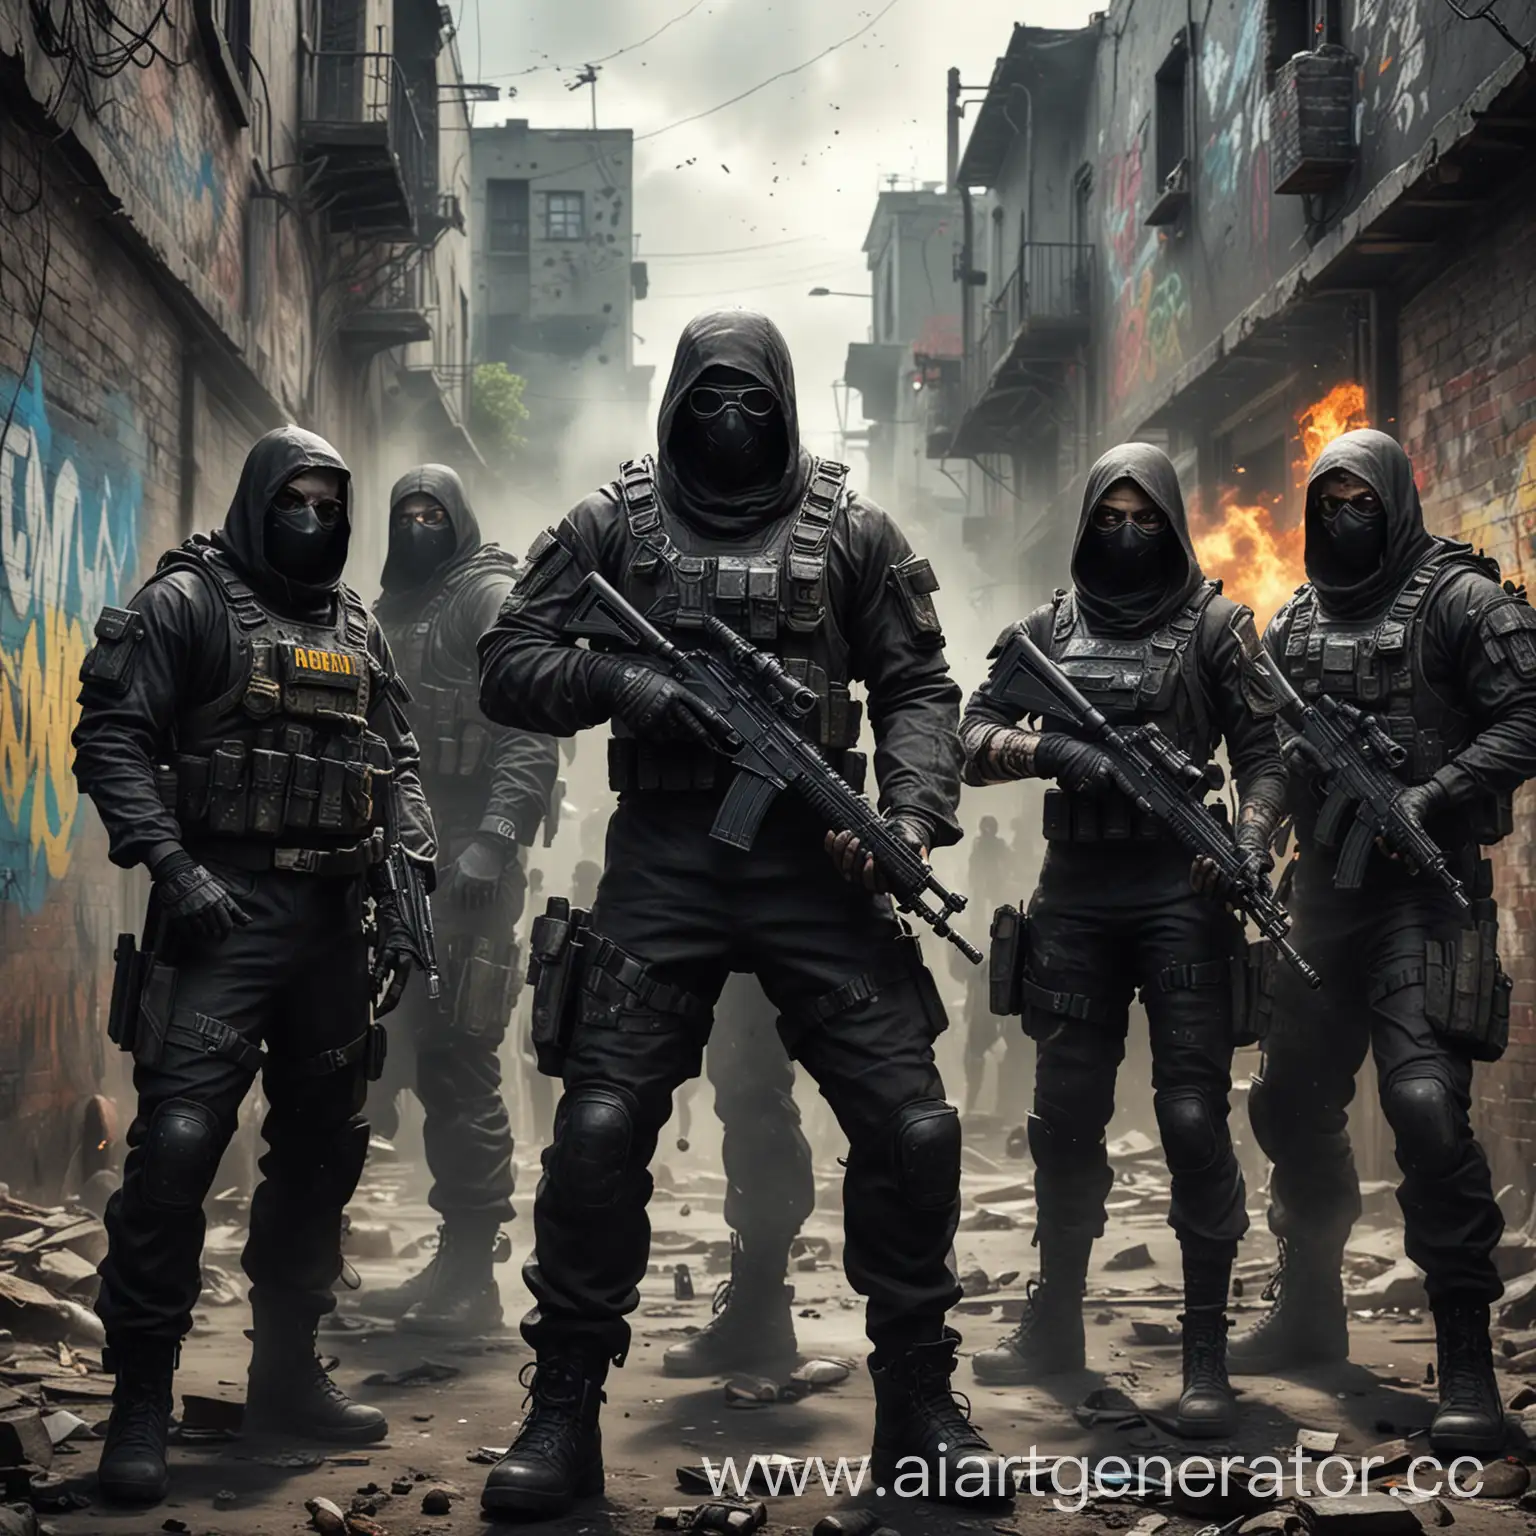 Команда  , игра call of Duty, яркая, классная, с вау эффекта без видимых лиц, чёрные маска, фантастические выдуманные костюмы, фантастика, в зоне действий, граффити